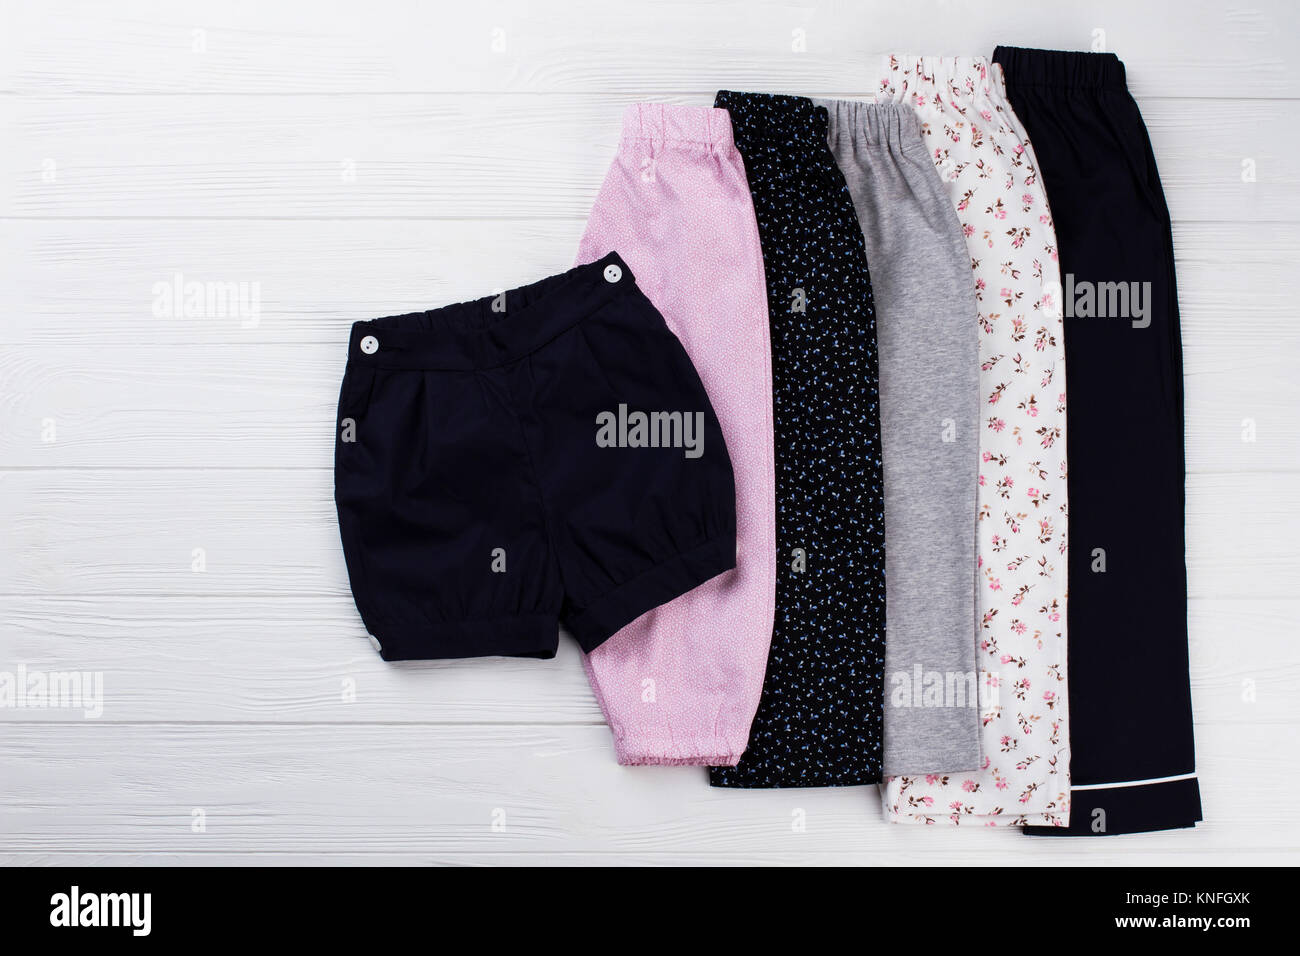 Pajama bottoms on white table Stock Photo